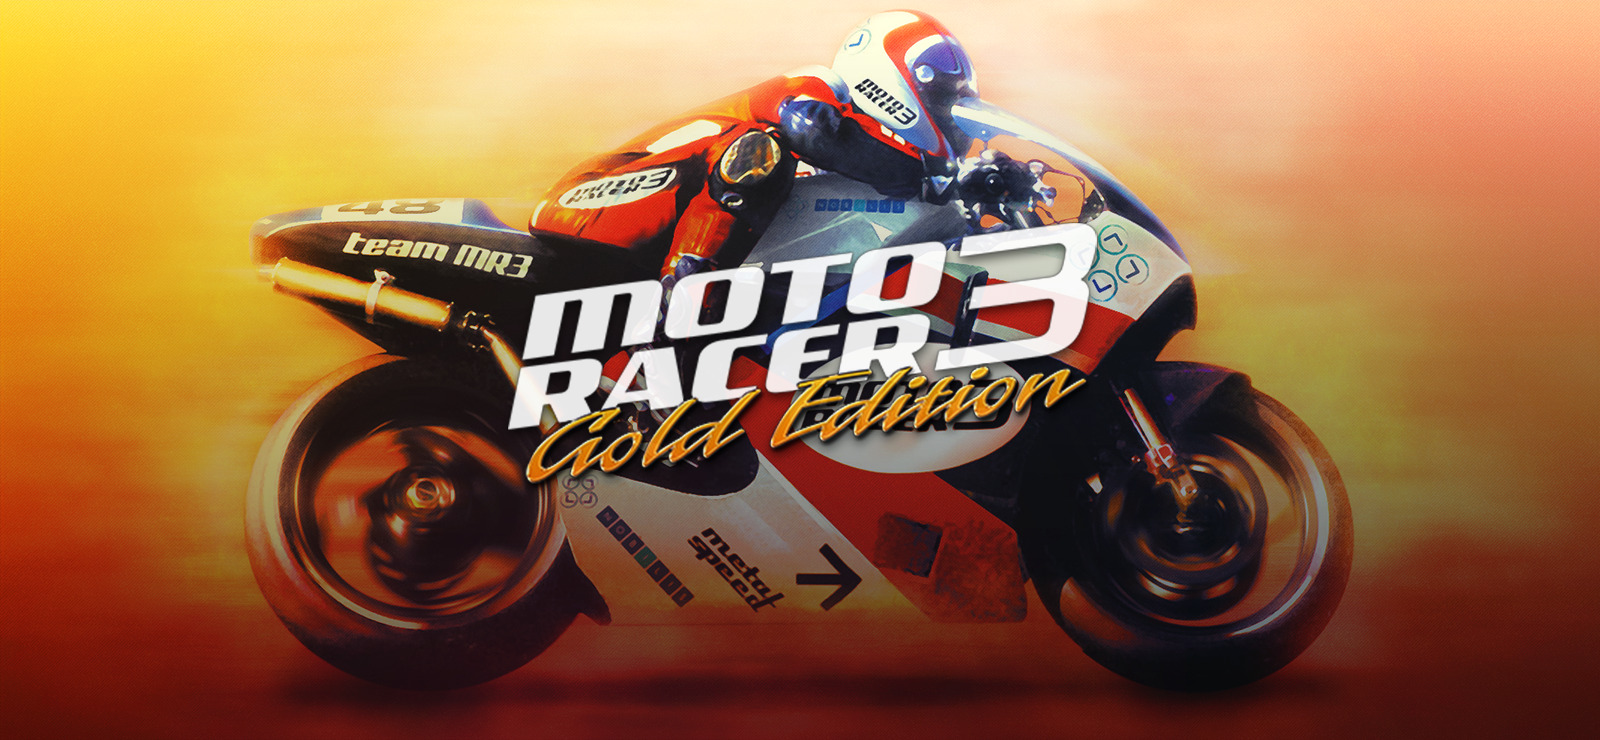 تحميل لعبة Moto Racer 3 للكمبيوتر موتو ريسر 3 برابط مضغوط ميديا فاير